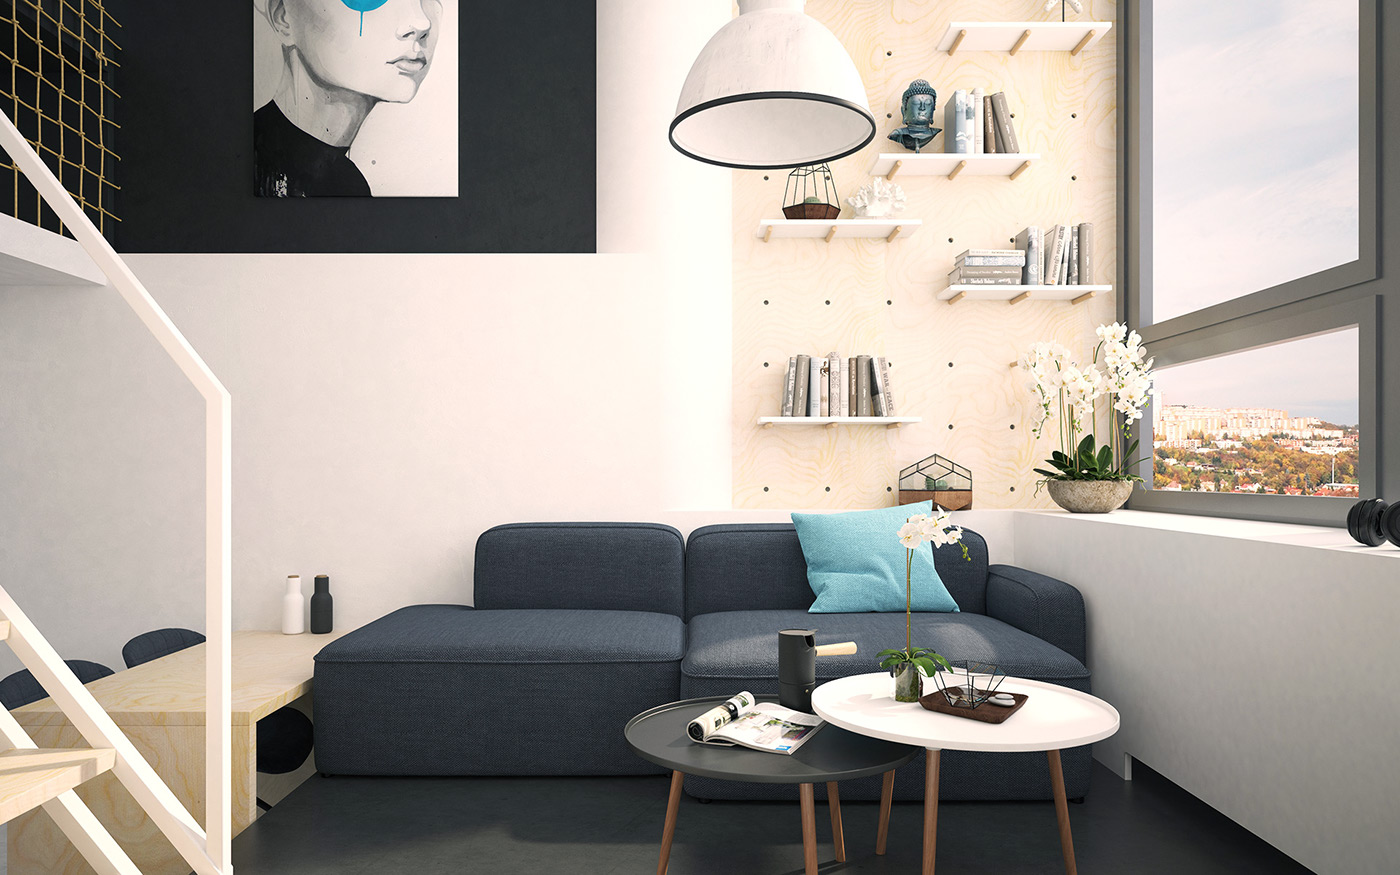 LOFT small Interior modern 3D visualisation kitchen bedroom livingroom